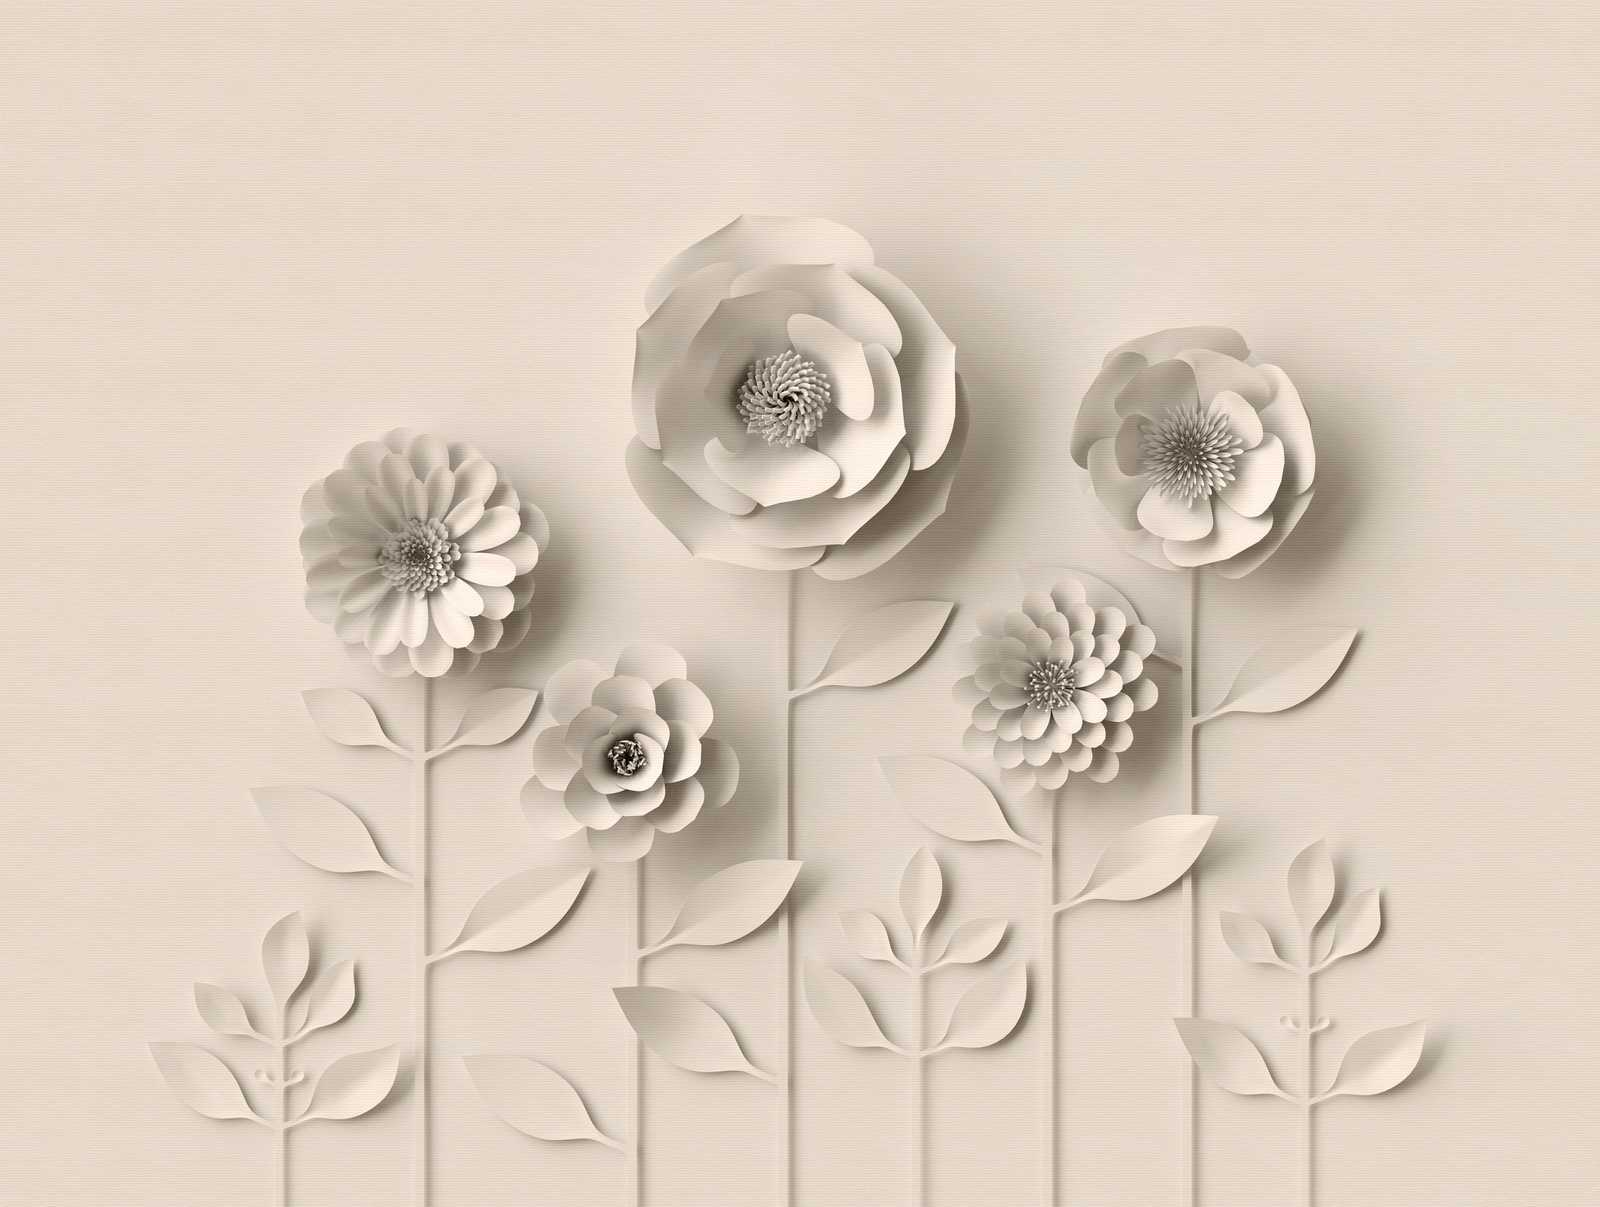             Tapeten Neuheit – 3D Motivtapete mit Papier Blumen, Cremeweiß
        